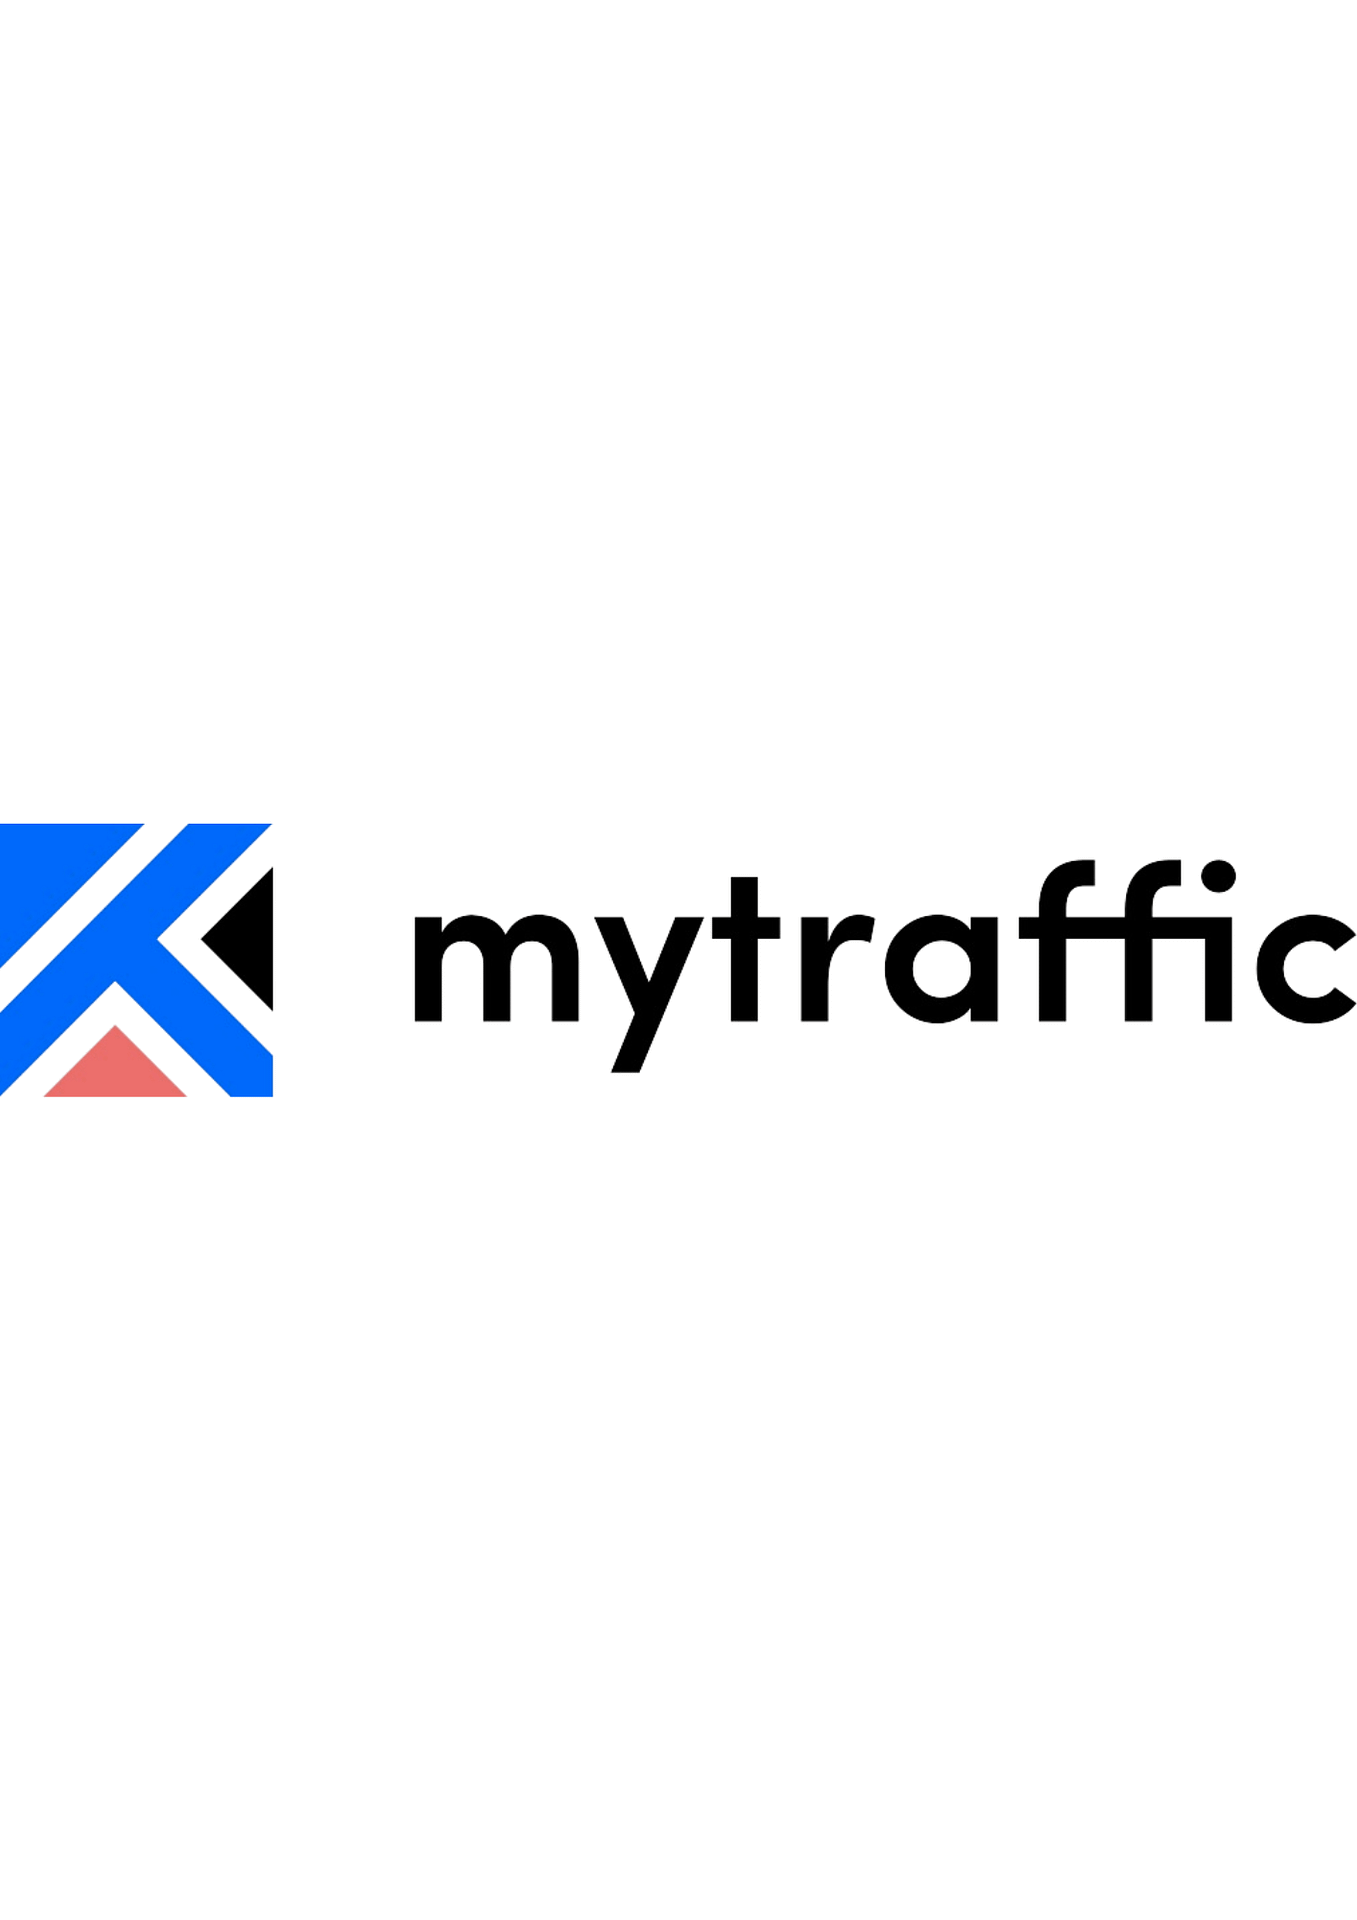 Mytraffic, le fournisseur d’intelligence numérique de qualité analytique Web, lève 30 millions d’euros.